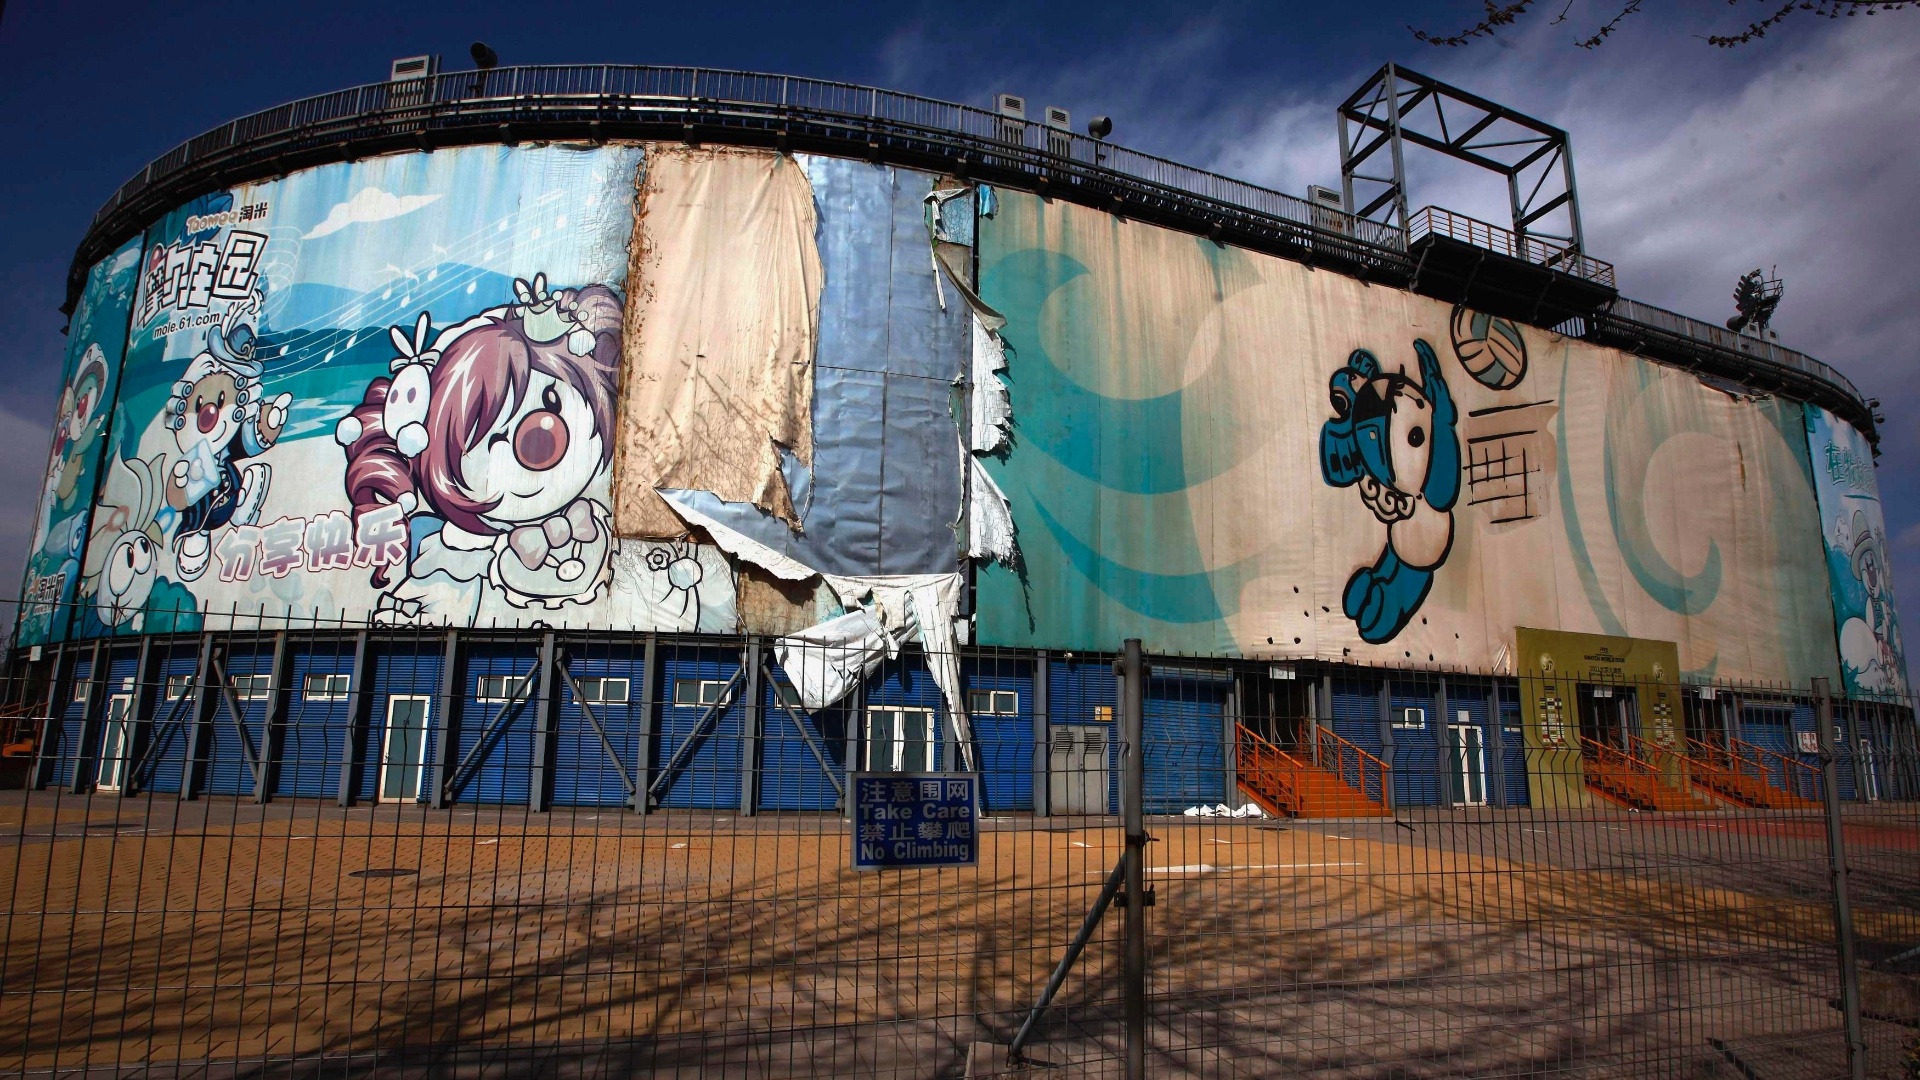 Outra sede abandonada de Pequim-2008 é a arena erguida para as competições de vôlei de praia. O espaço fica fechado e não recebe visitações